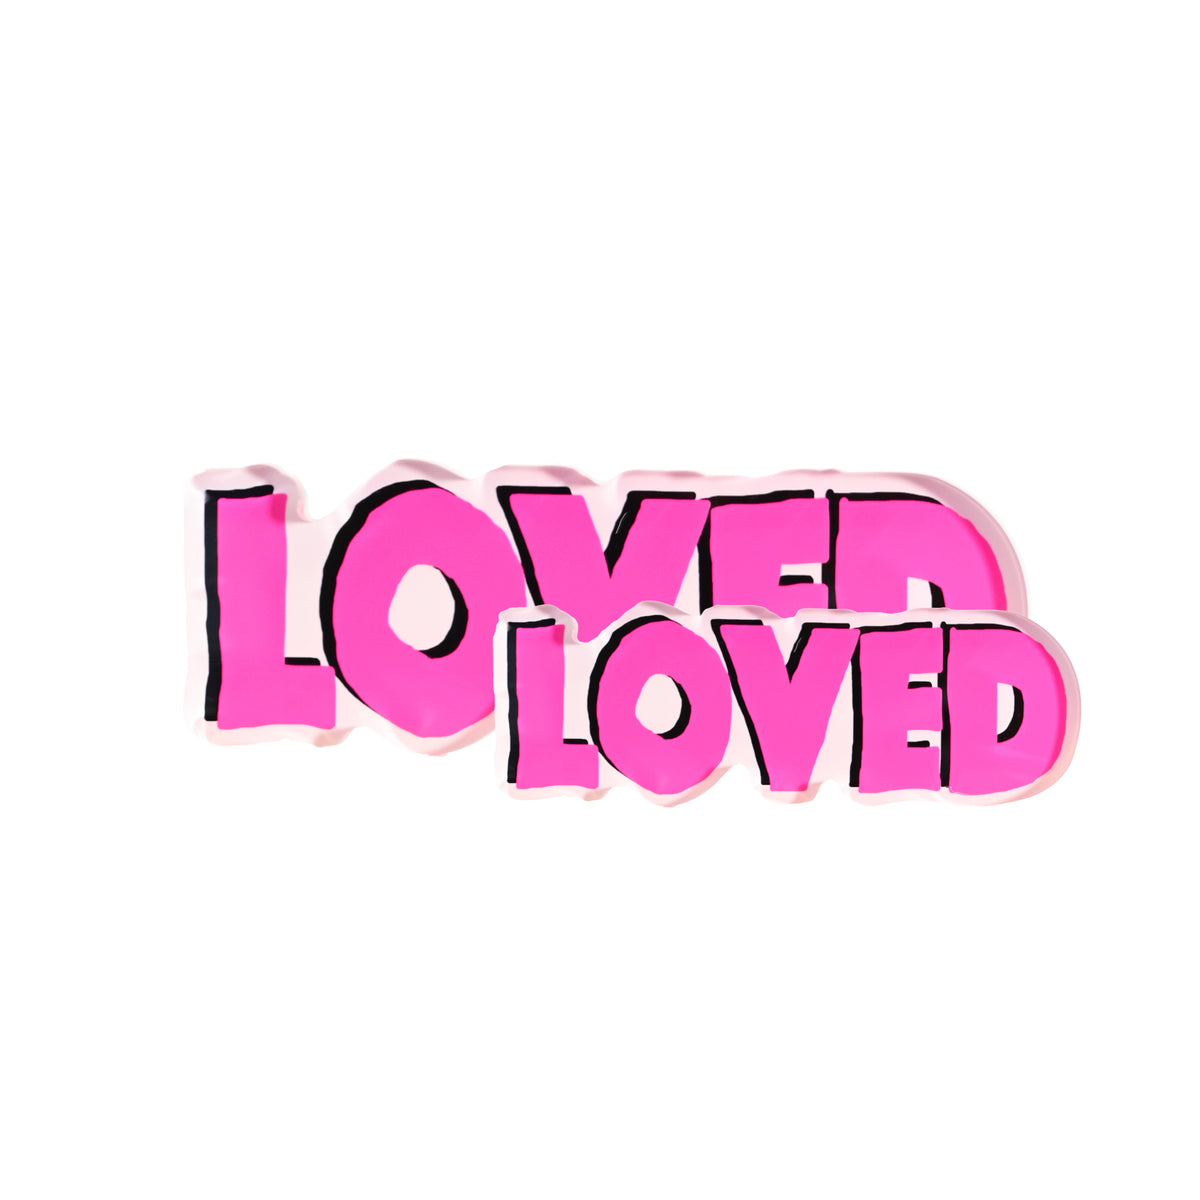 Loved Rock of Love Pop Pink – KERRI ROSENTHAL